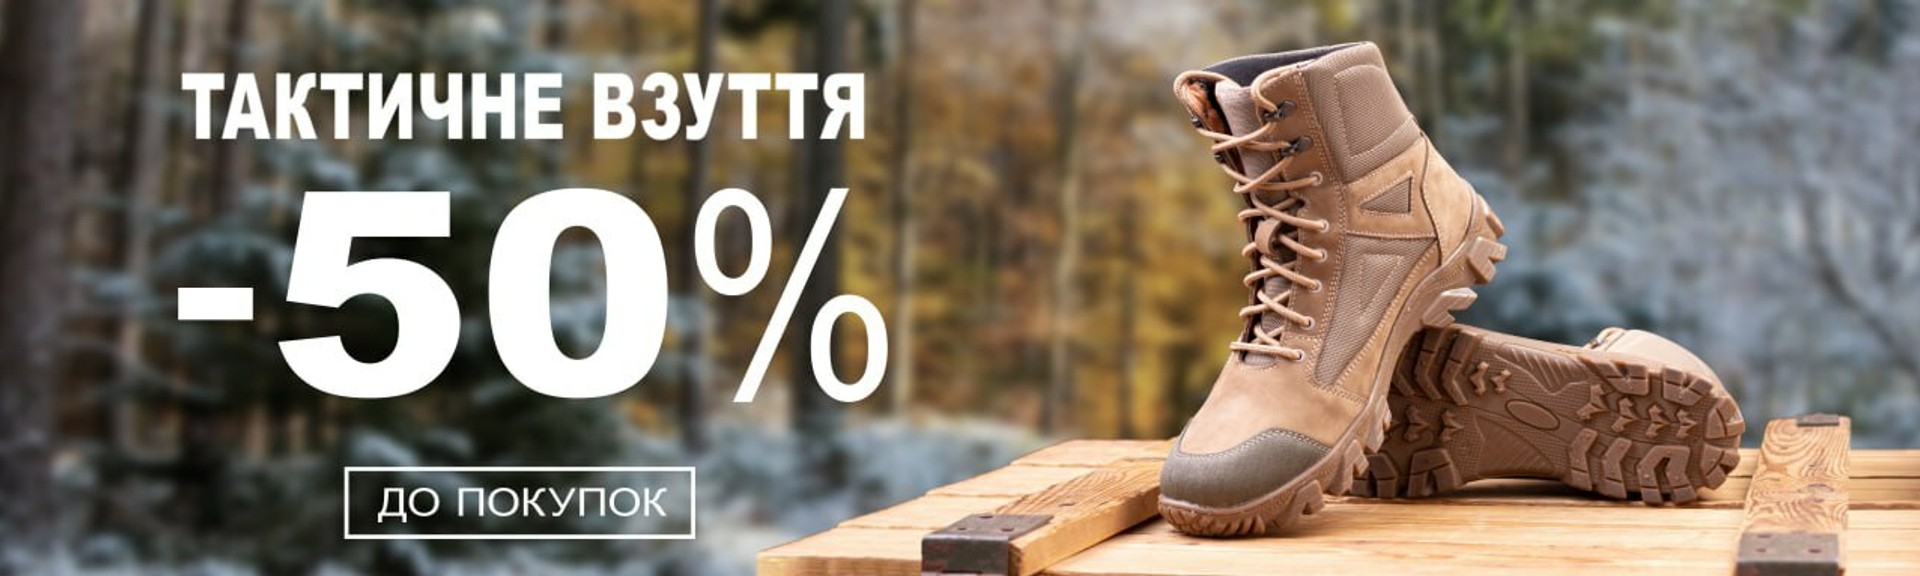 тактичне взуття за супер знижками -50%